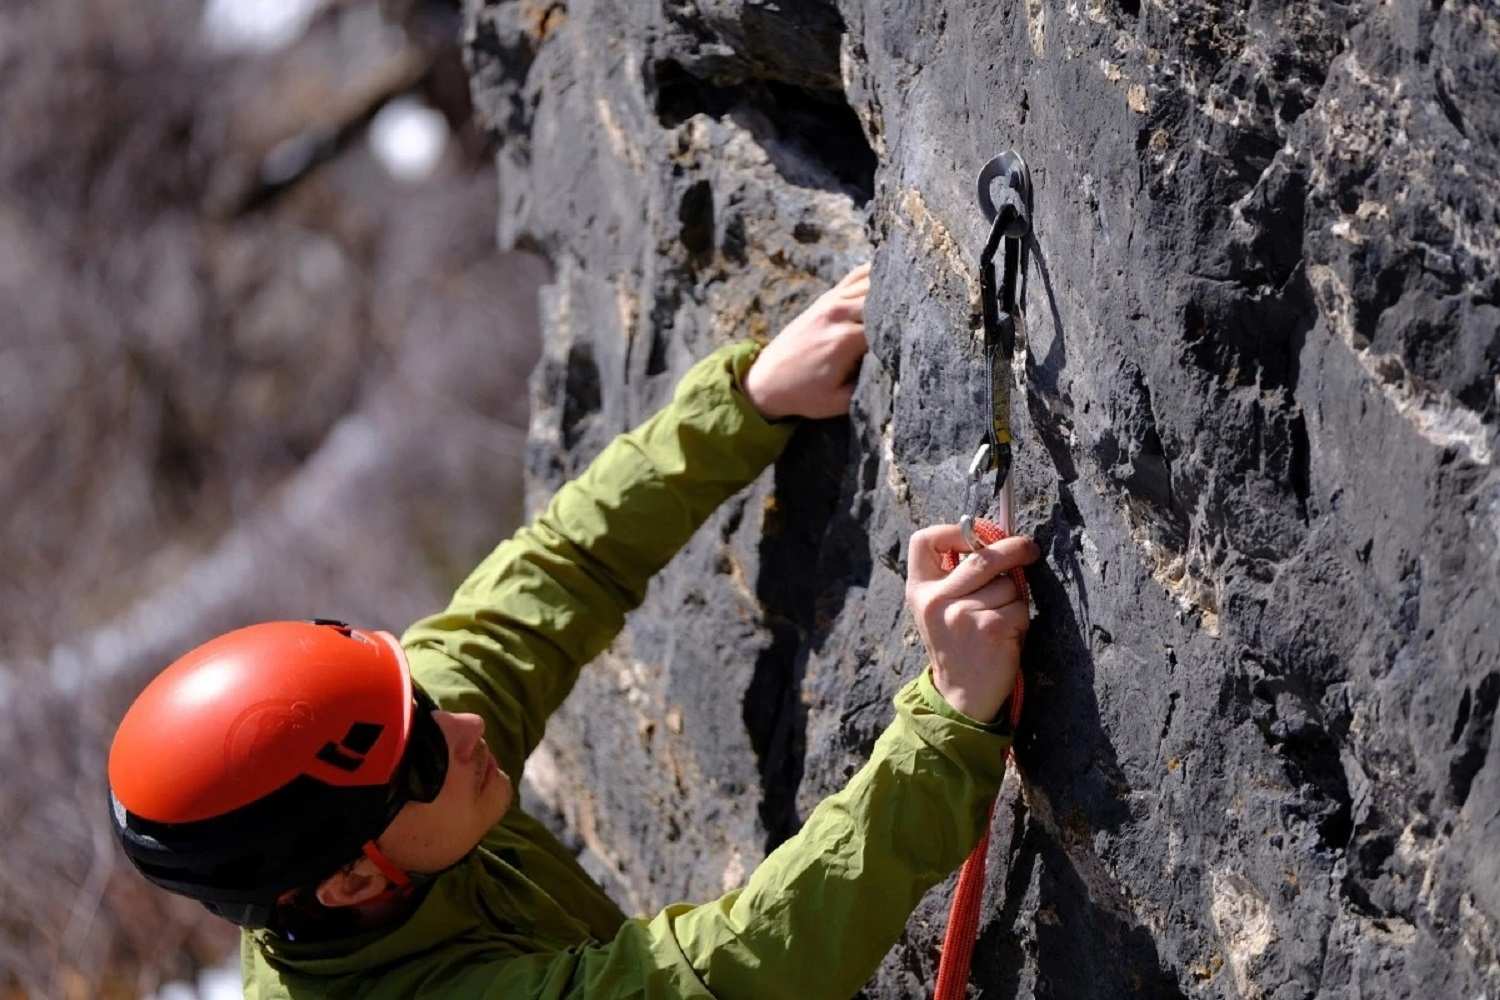 Ròng rọc được sử dụng để leo núi là gì?